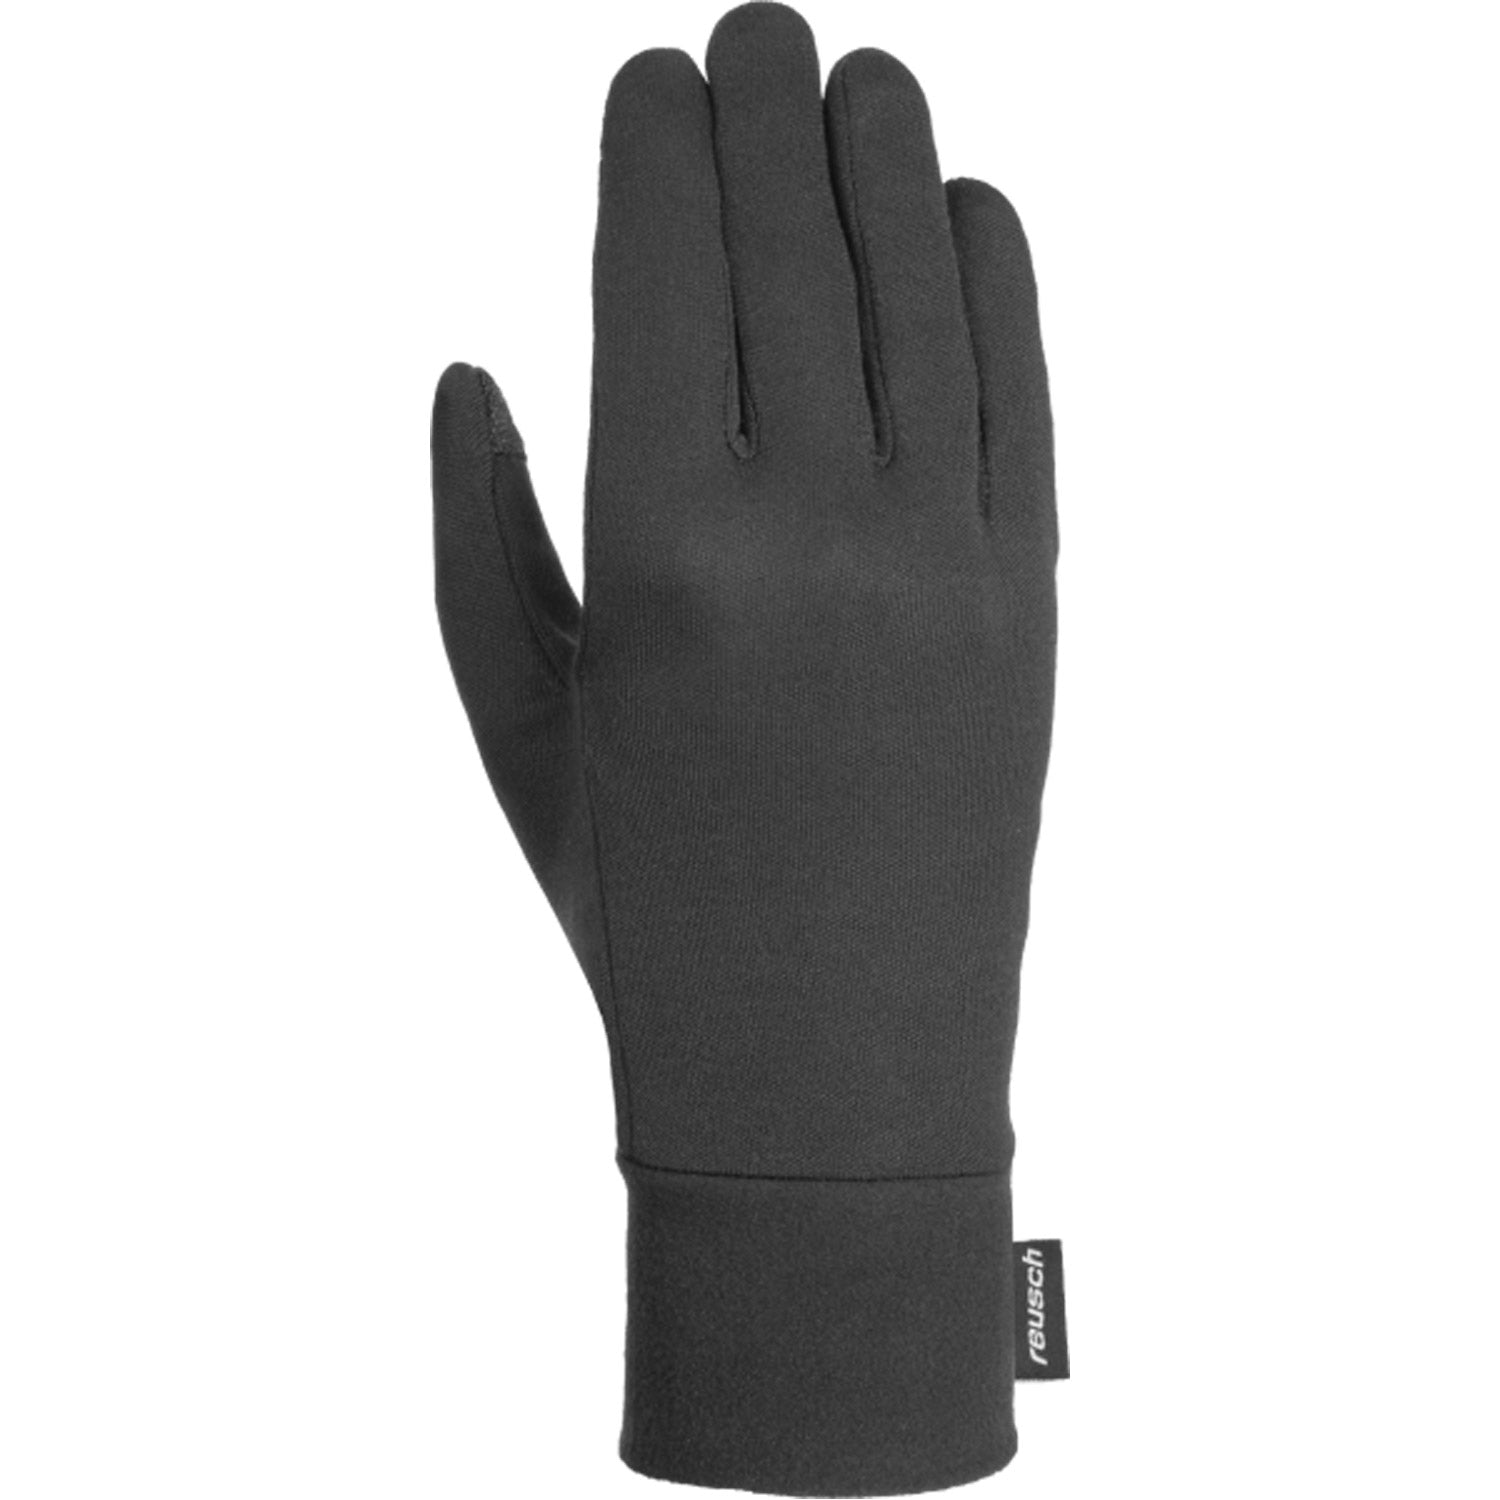 Silk Touchtec Glove Liner